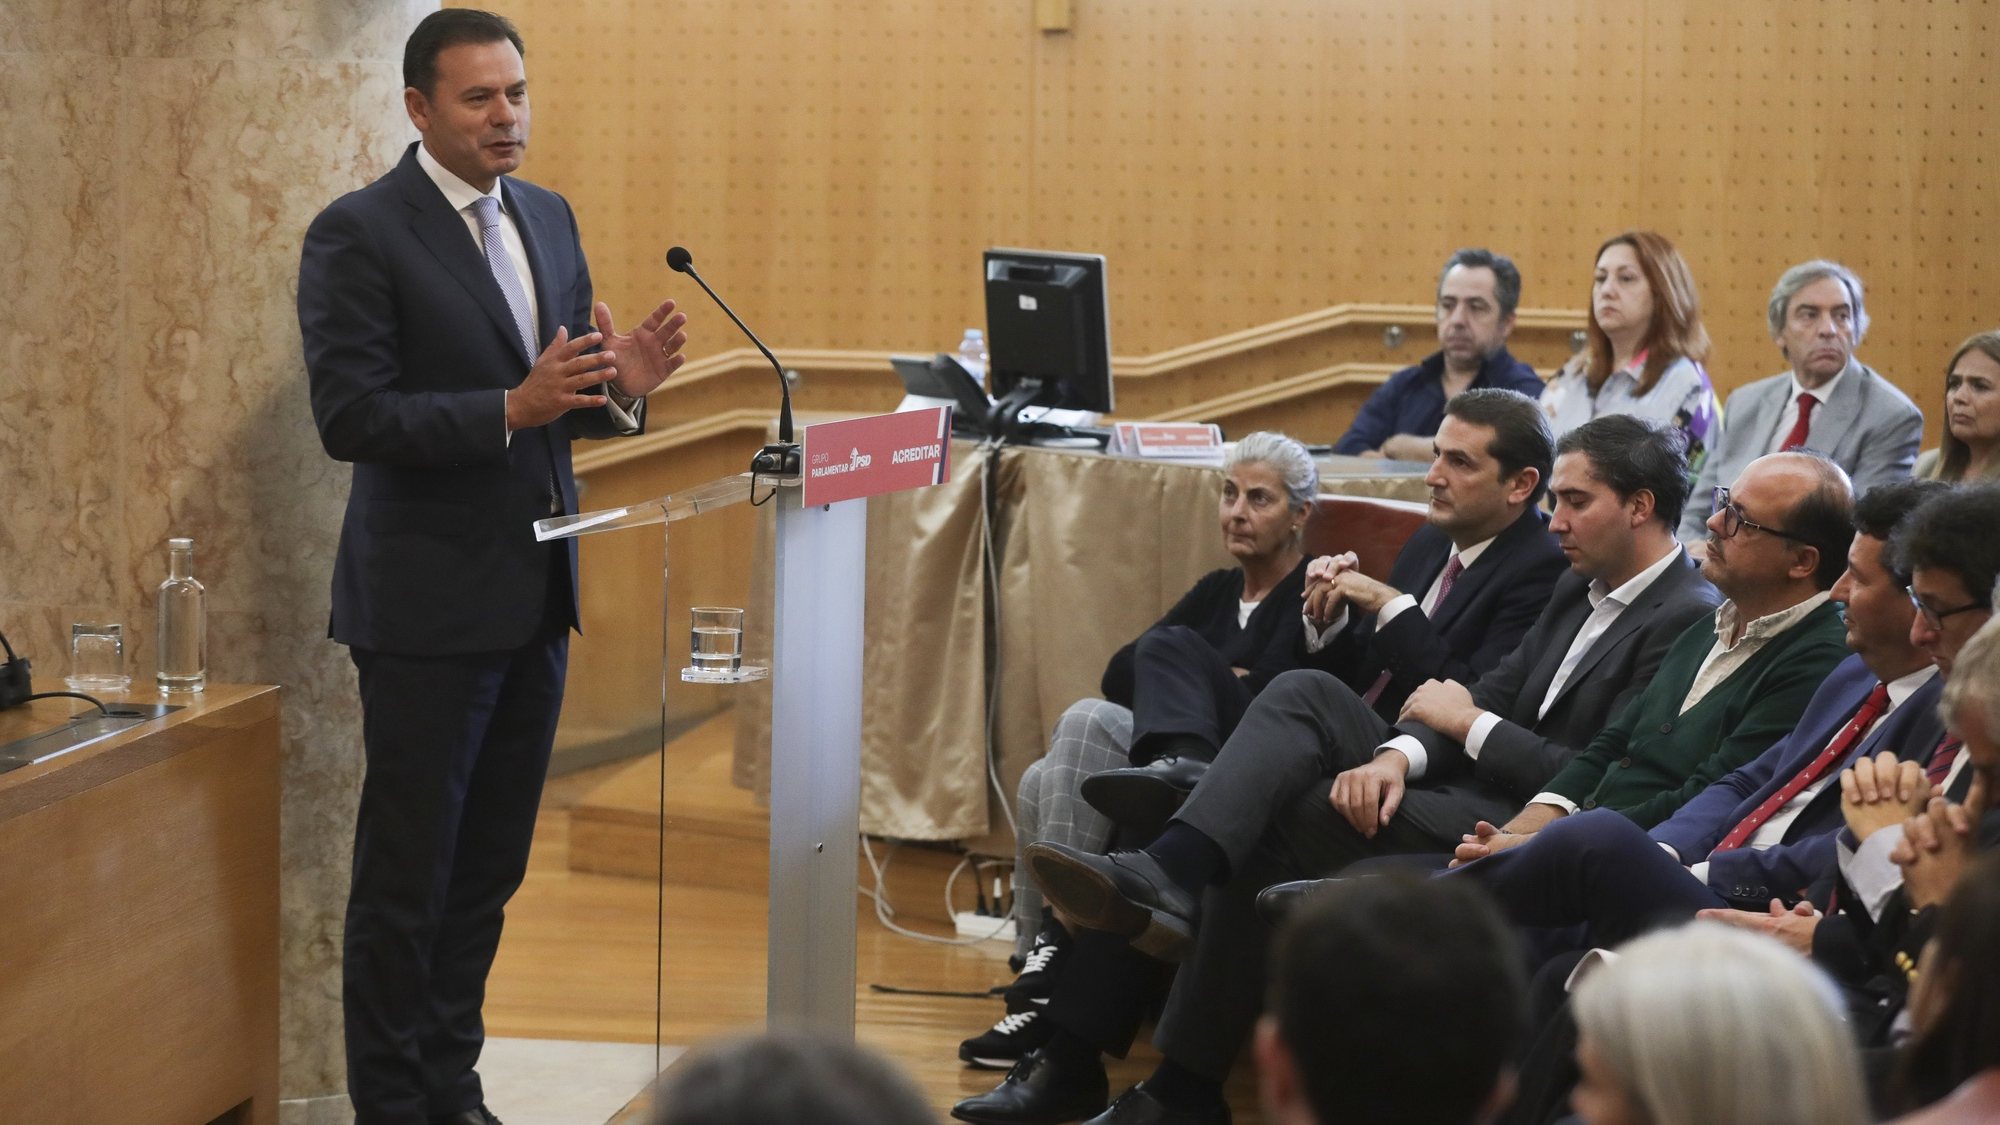 O presidente do Partido Social Democrata (PSD) Luís Montenegro, intervém na sessão de encerramento das Jornadas Parlamentares subordinadas ao tema “Acreditar em Portugal” na Assembleia da Reública em Lisboa, 18 de outubro de 2022. TIAGO PETINGA/LUSA